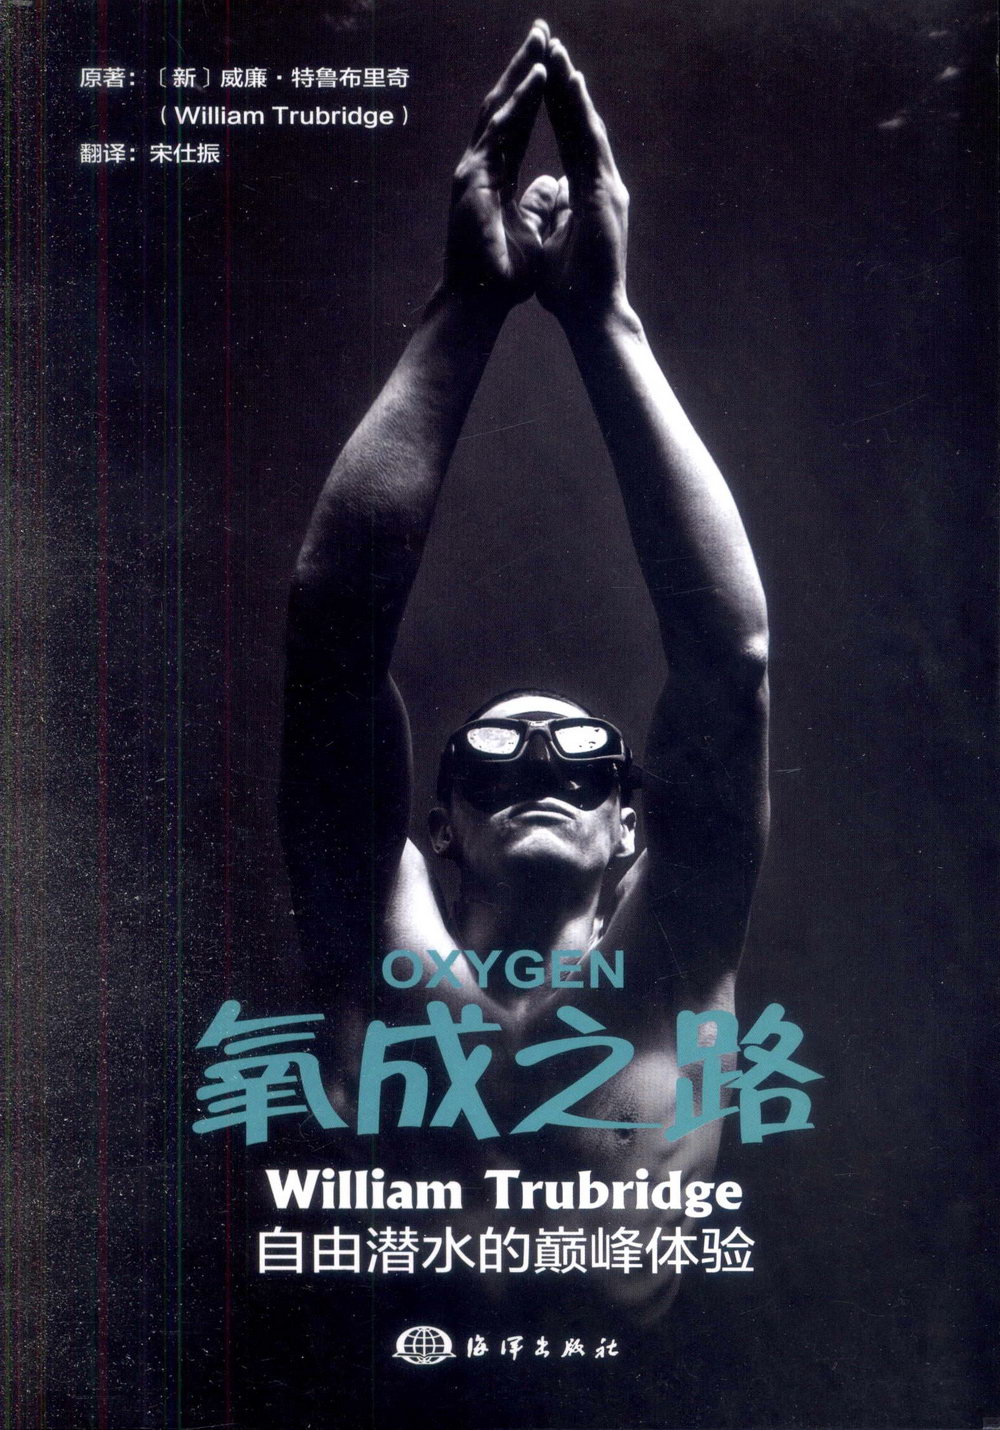 氧成之路：William Trubridge自由潛水的巔峰體驗